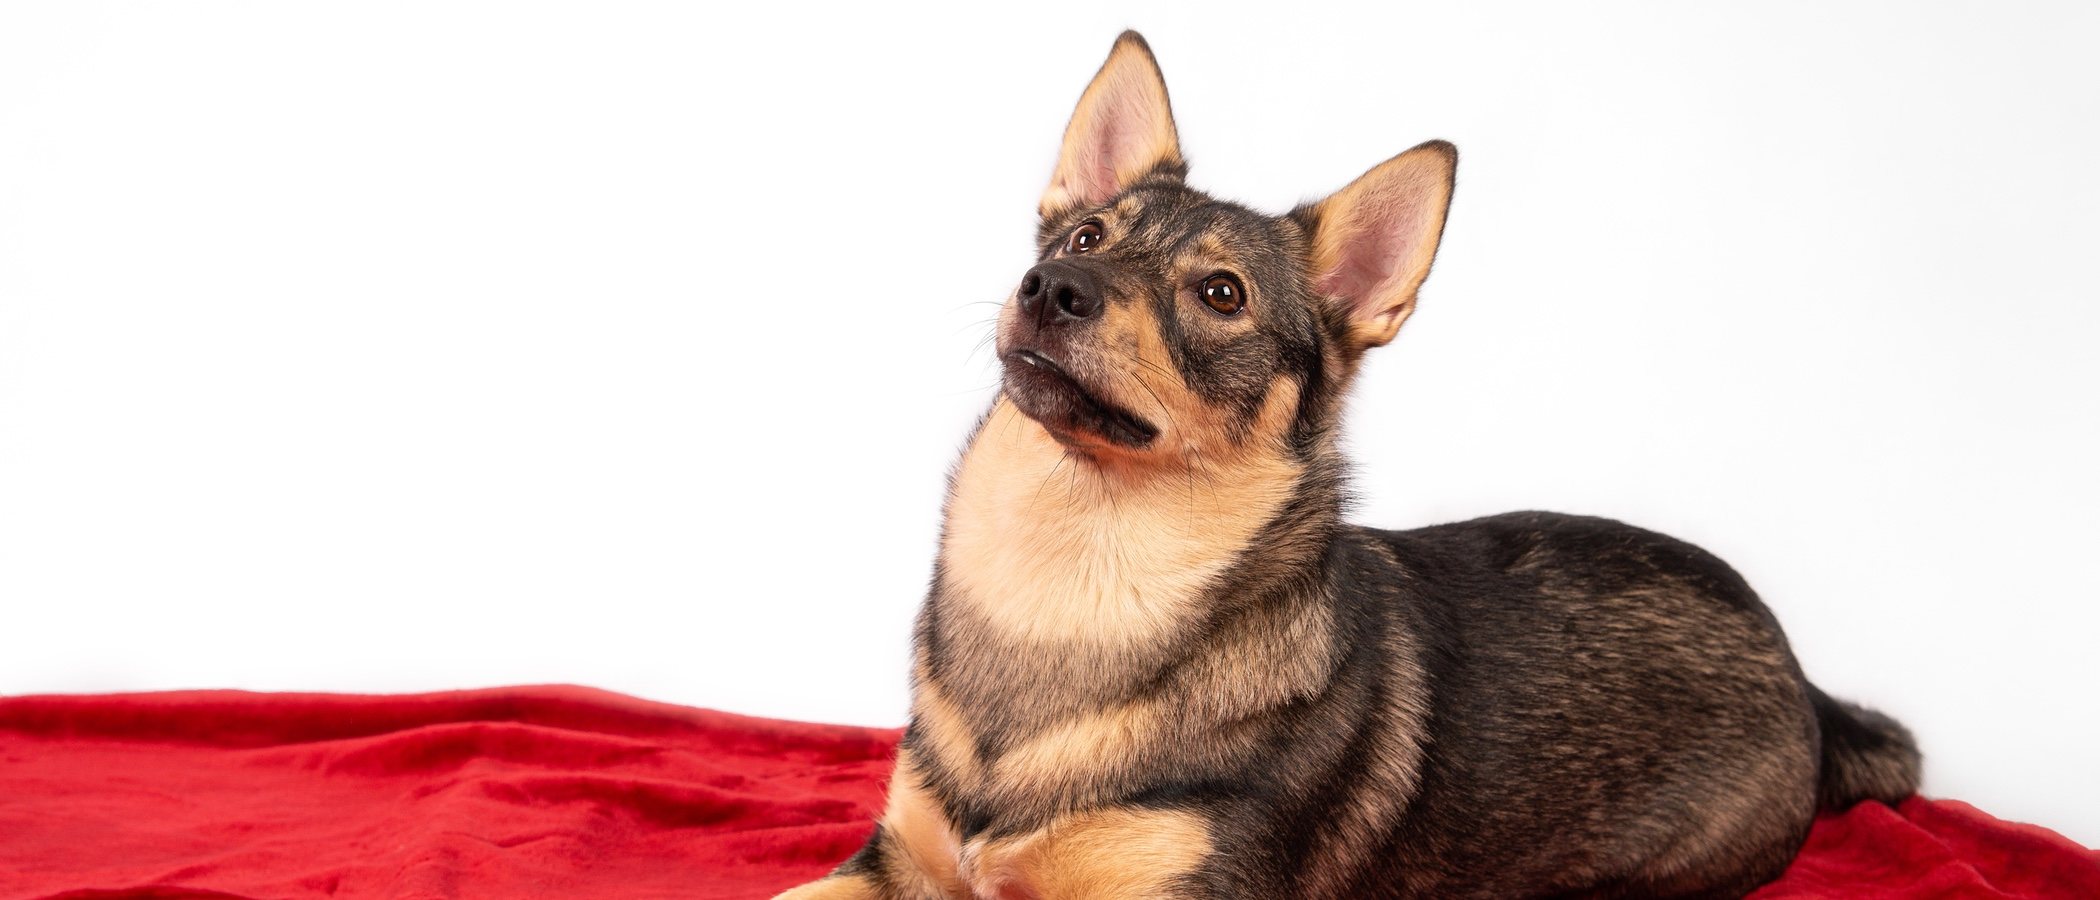 Vallhund sueco: conoce todo sobre esta raza de perro